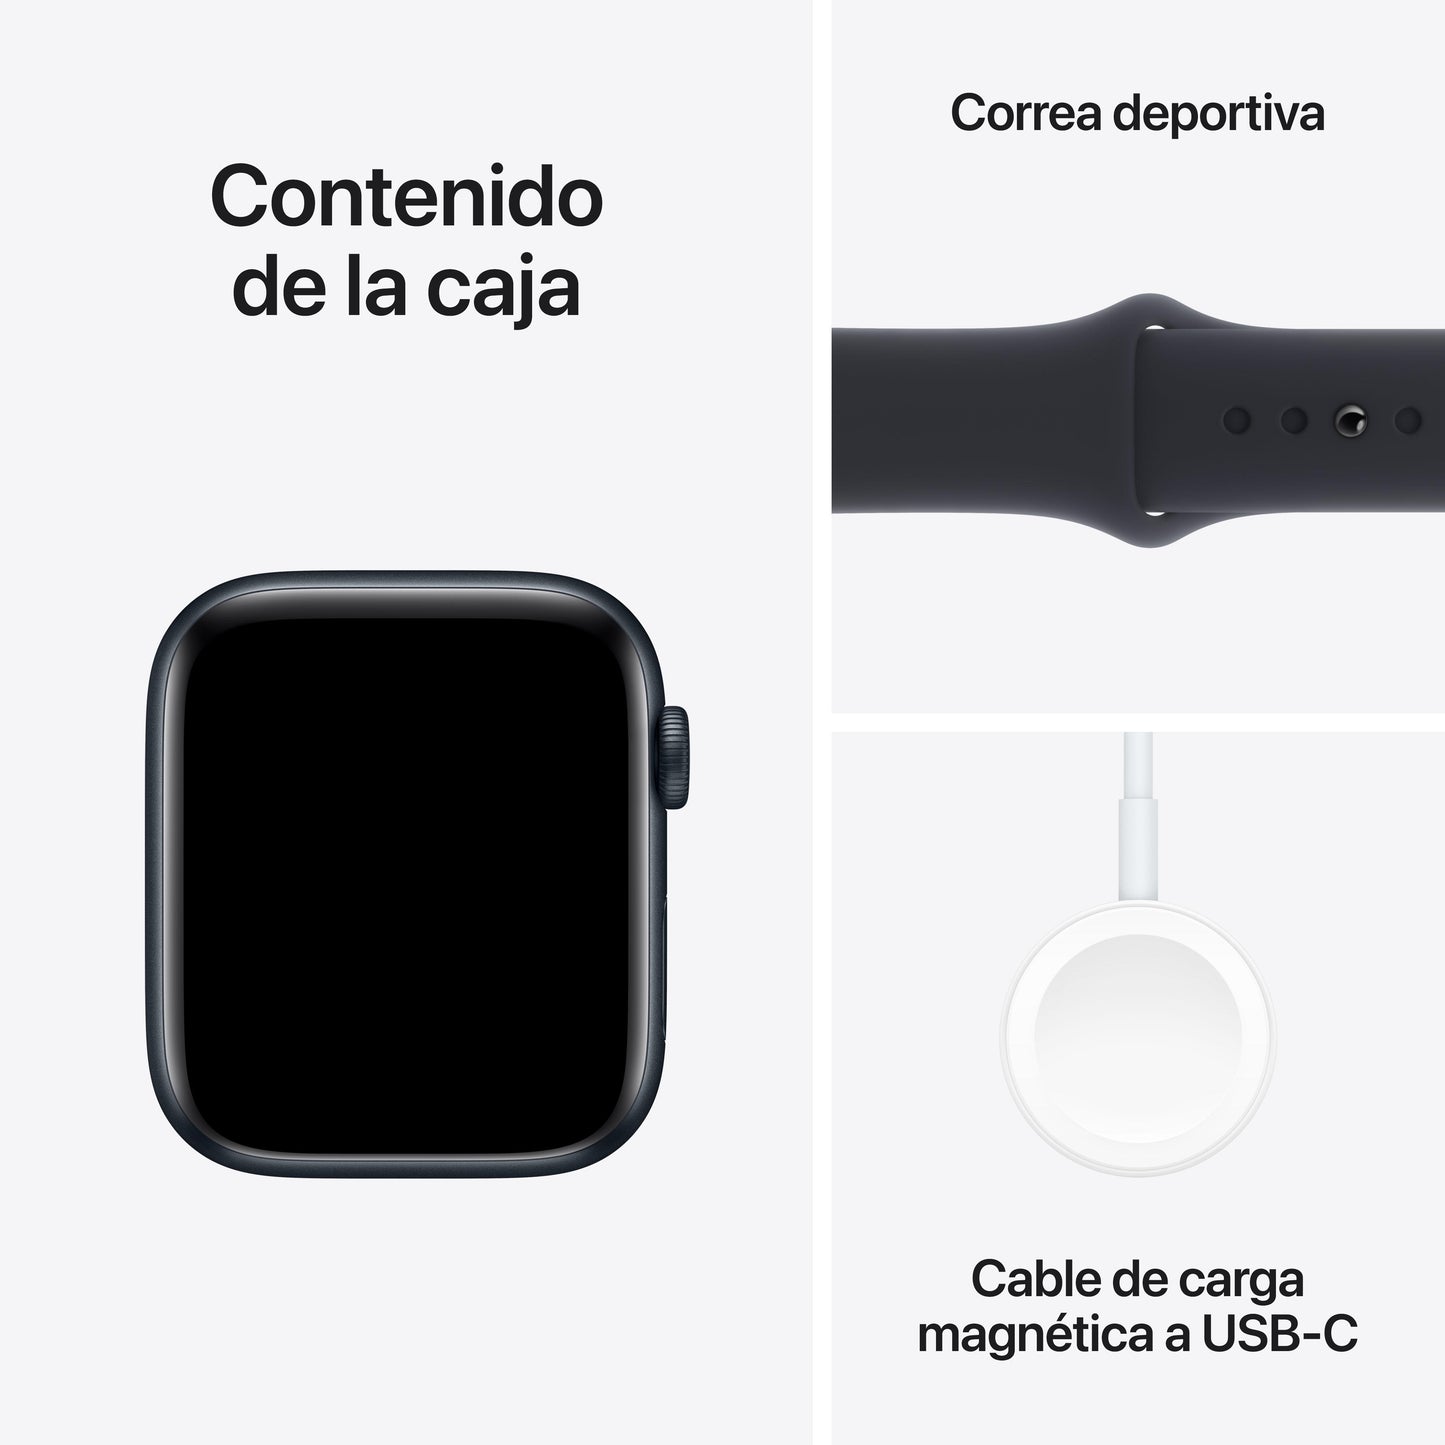 Apple Watch SE (GPS) - Caja de aluminio en color medianoche de 44 mm - Correa deportiva color medianoche - Talla S/M